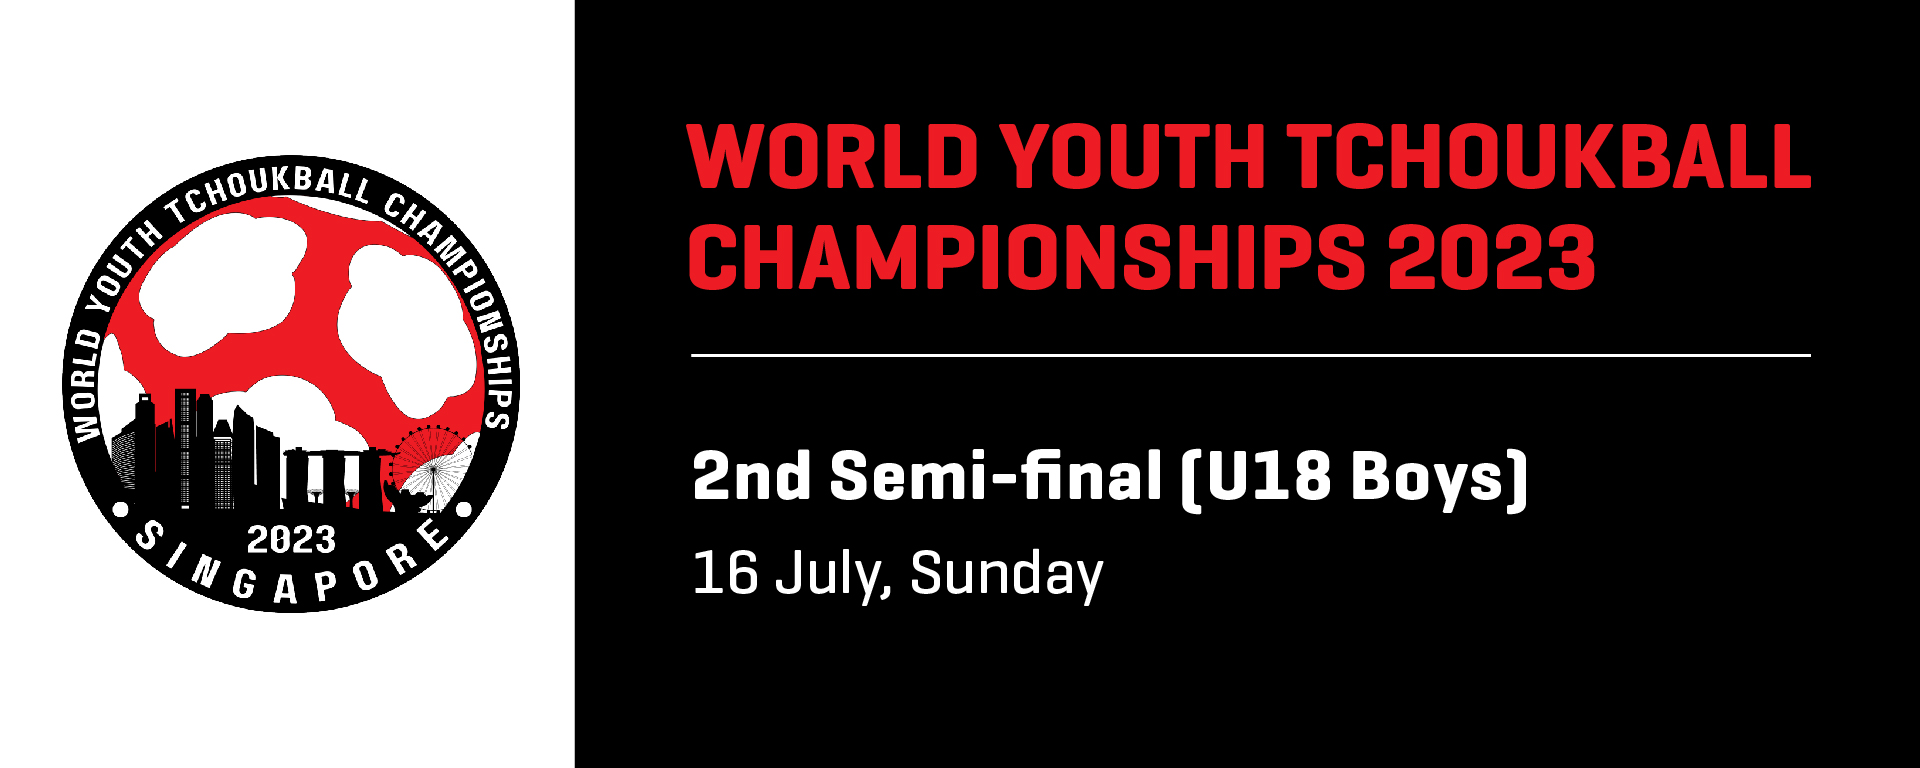 World Youth Tchoukball Championships 2023 | U18 Boys 2nd Semi-final | Chinese Taipei vs Hong Kong